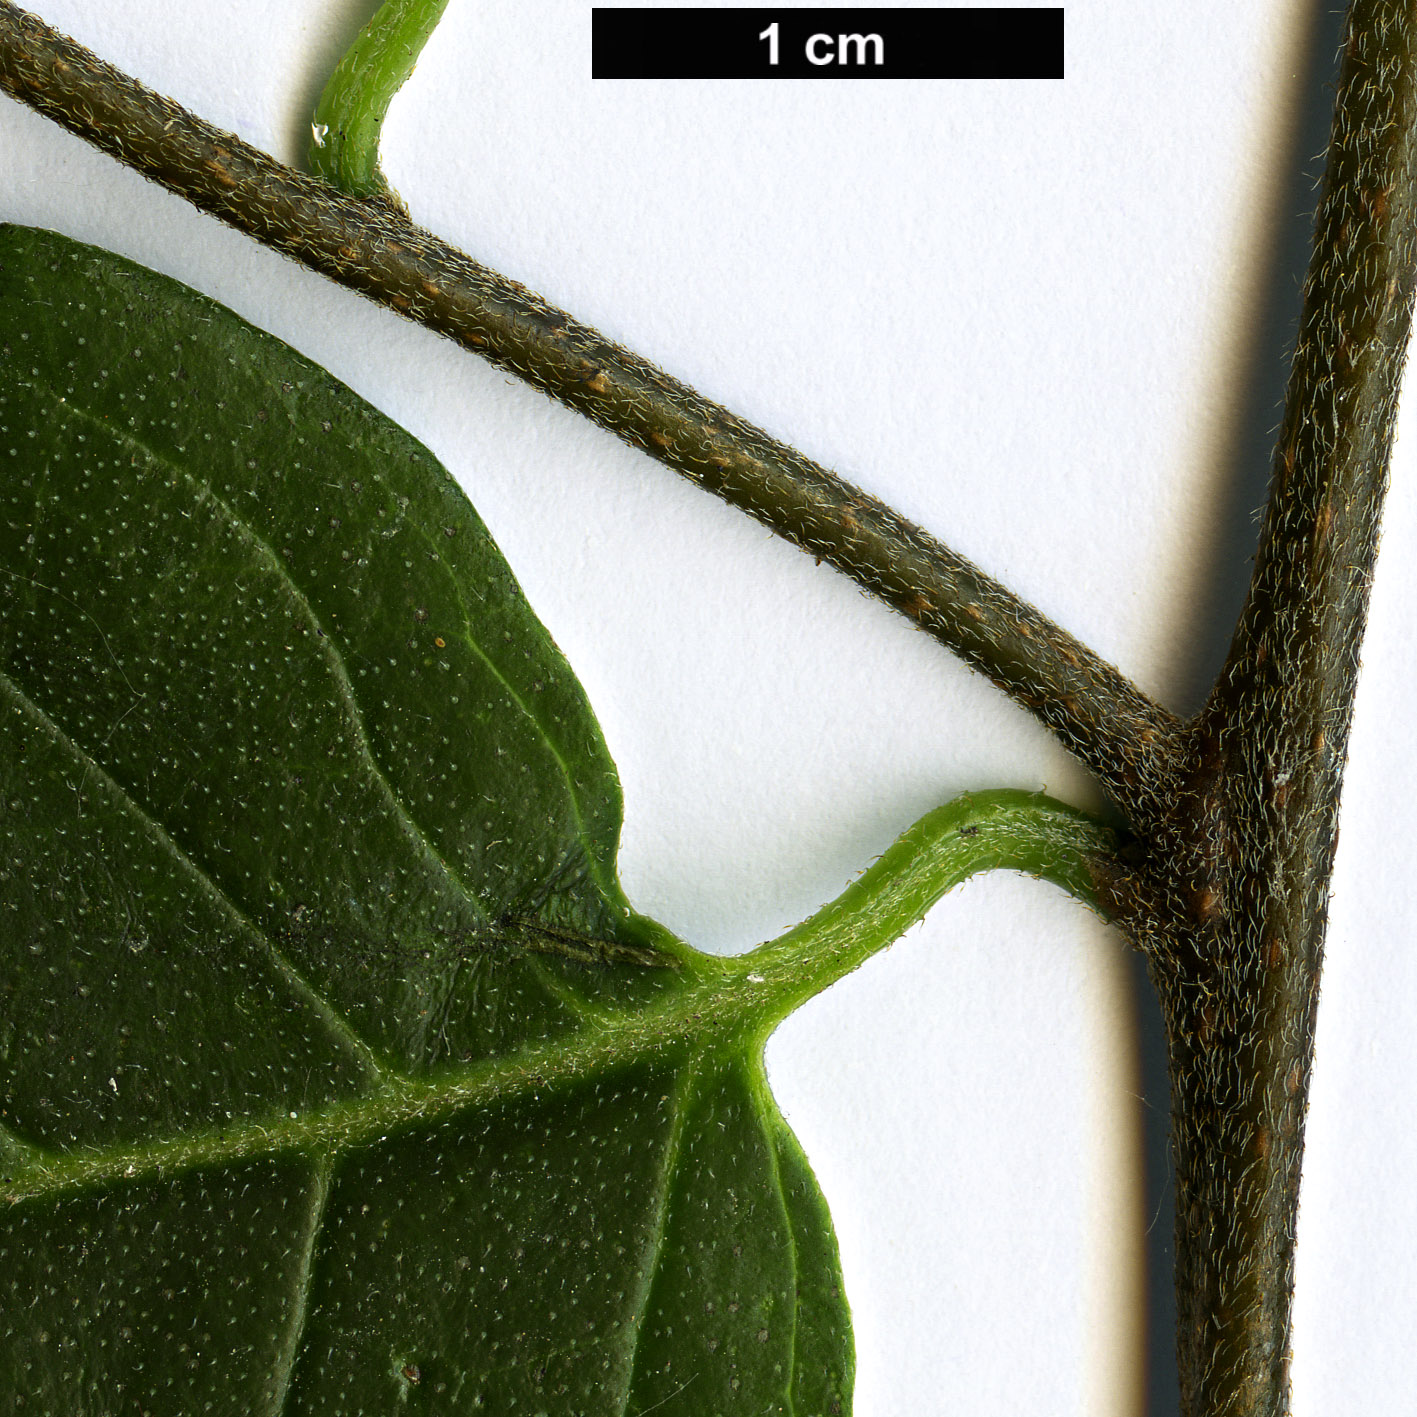 High resolution image: Family: Boraginaceae - Genus: Tournefortia - Taxon: volubilis